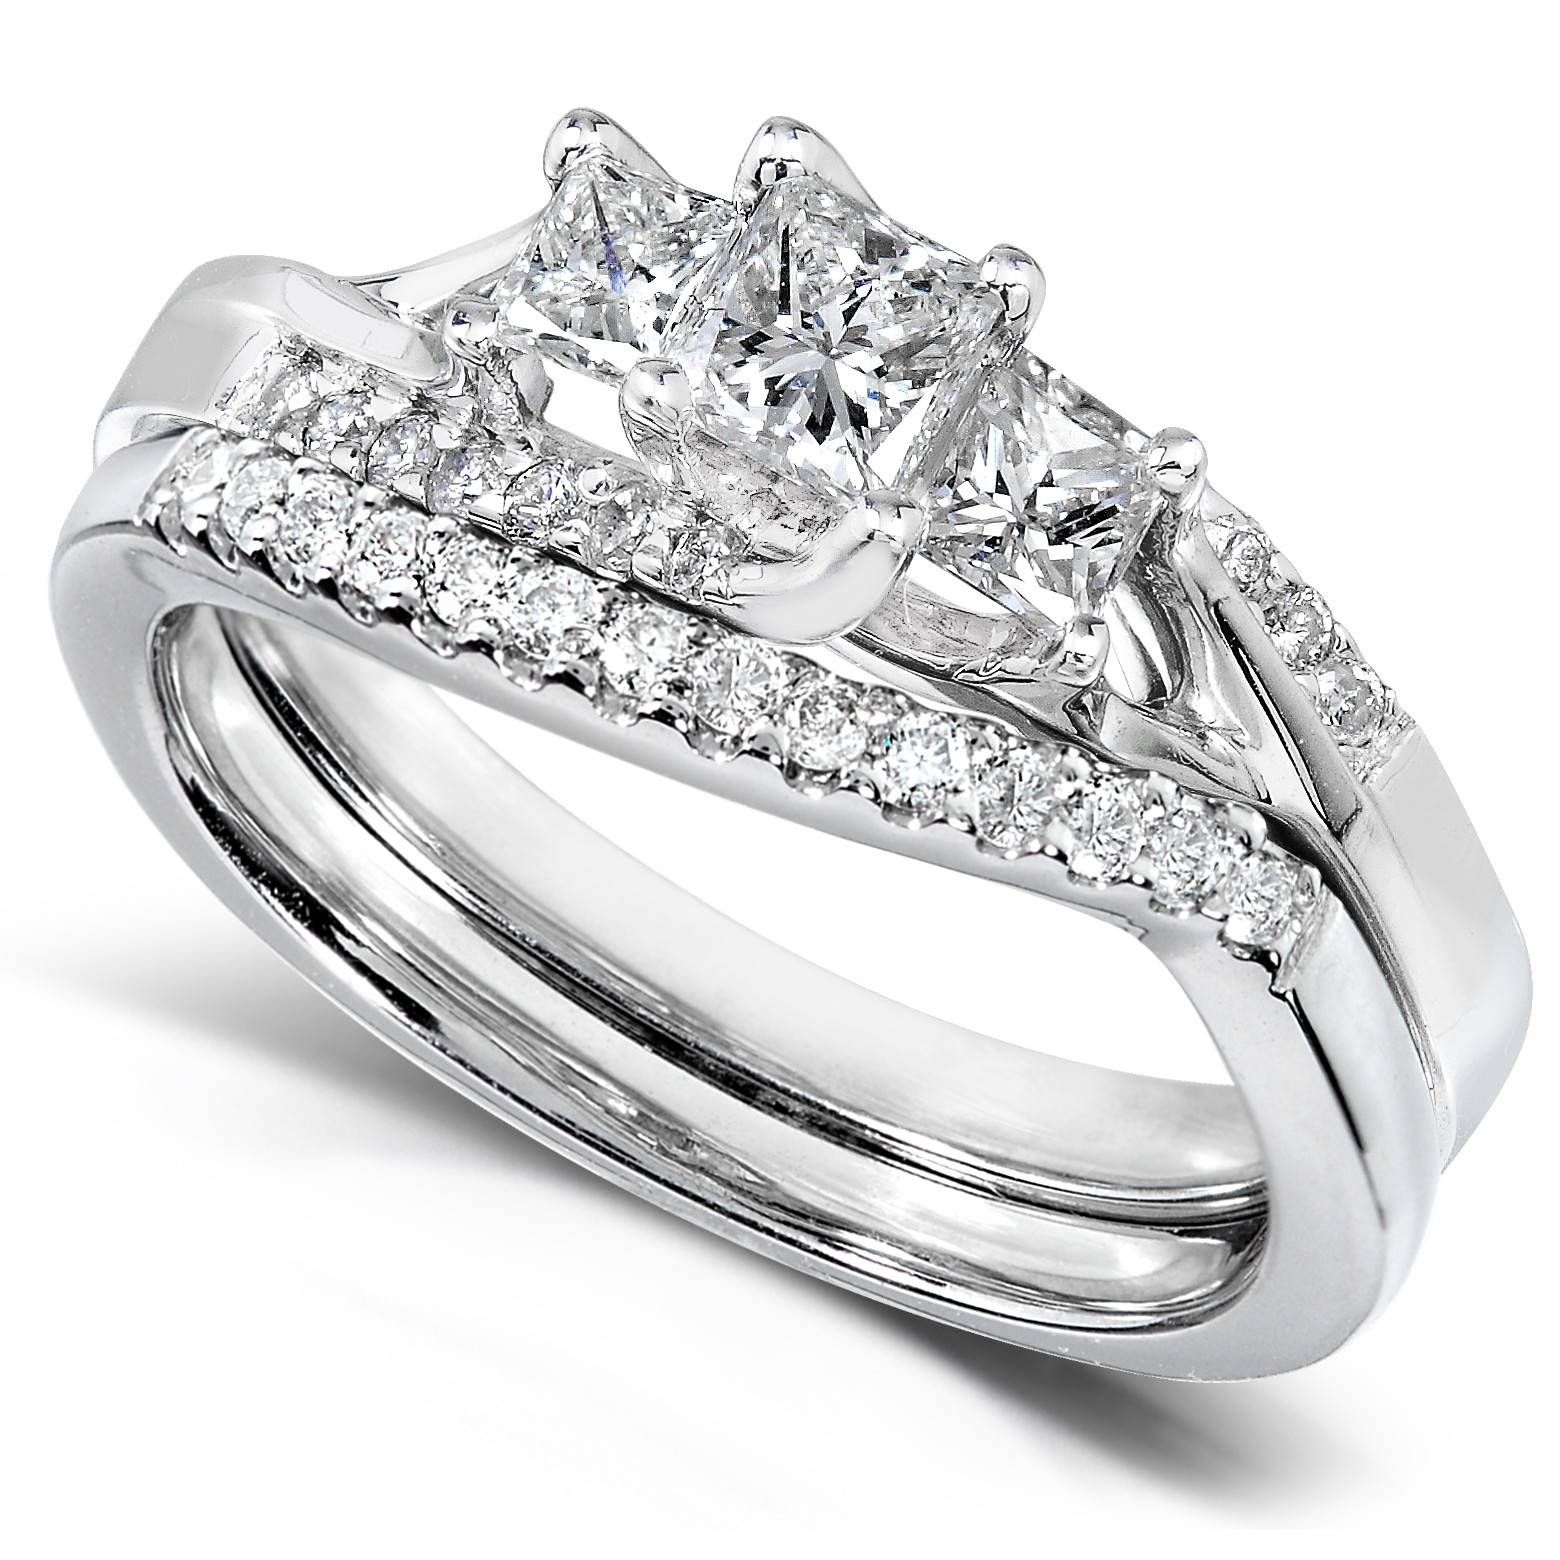 Interlocking Engagement Ring Wedding Band Beautiful Wedding Rings With Regard To Recent Interlocking Engagement Ring Wedding Bands (View 15 of 15)